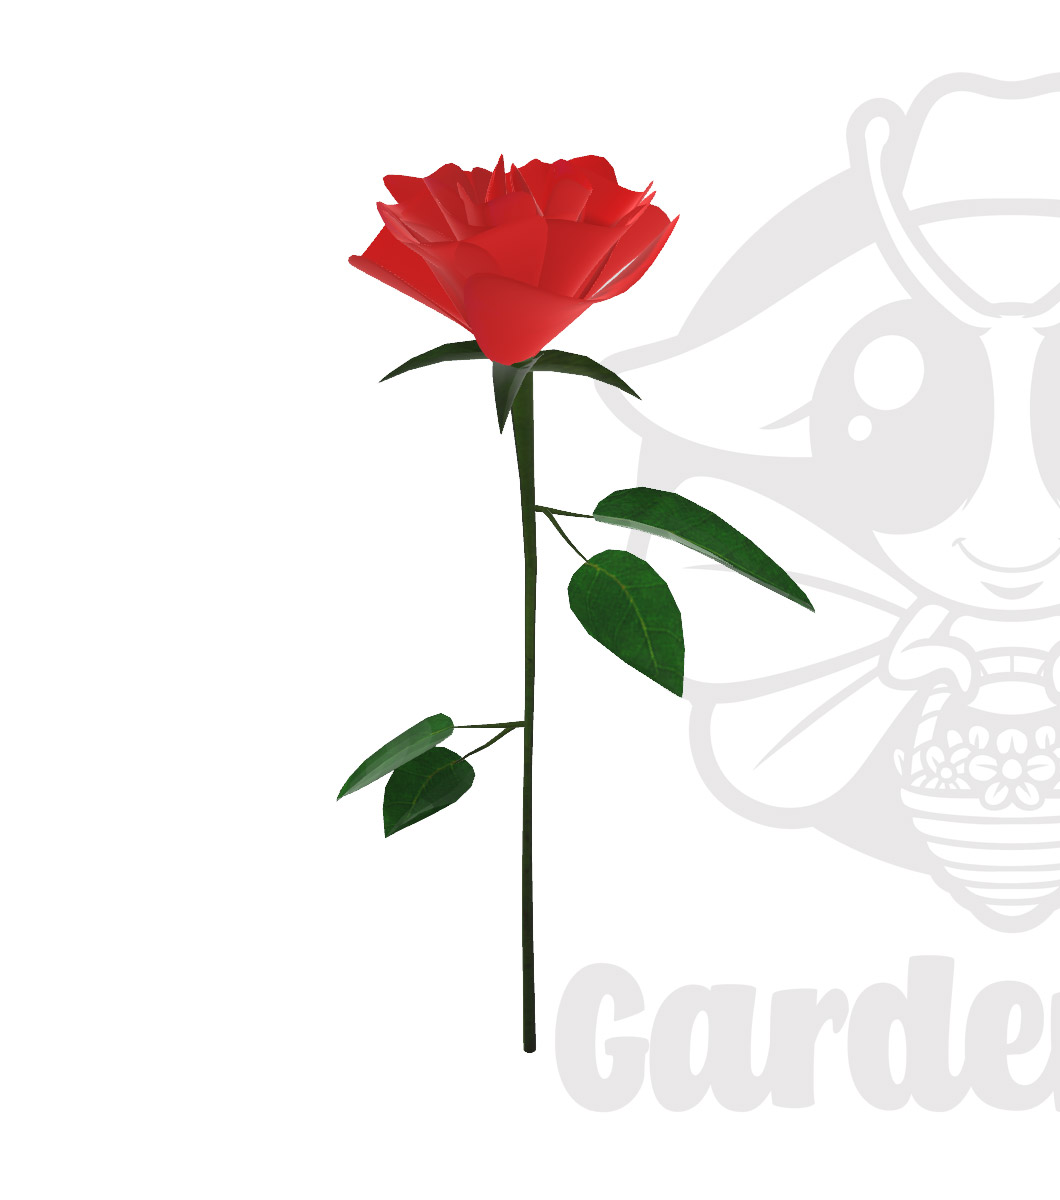 真っ赤な薔薇 一輪 あなたしかいない Yor Re My Destiny Red Rose バーチャル花屋gardenbee 3dモデル無料ダウンロード